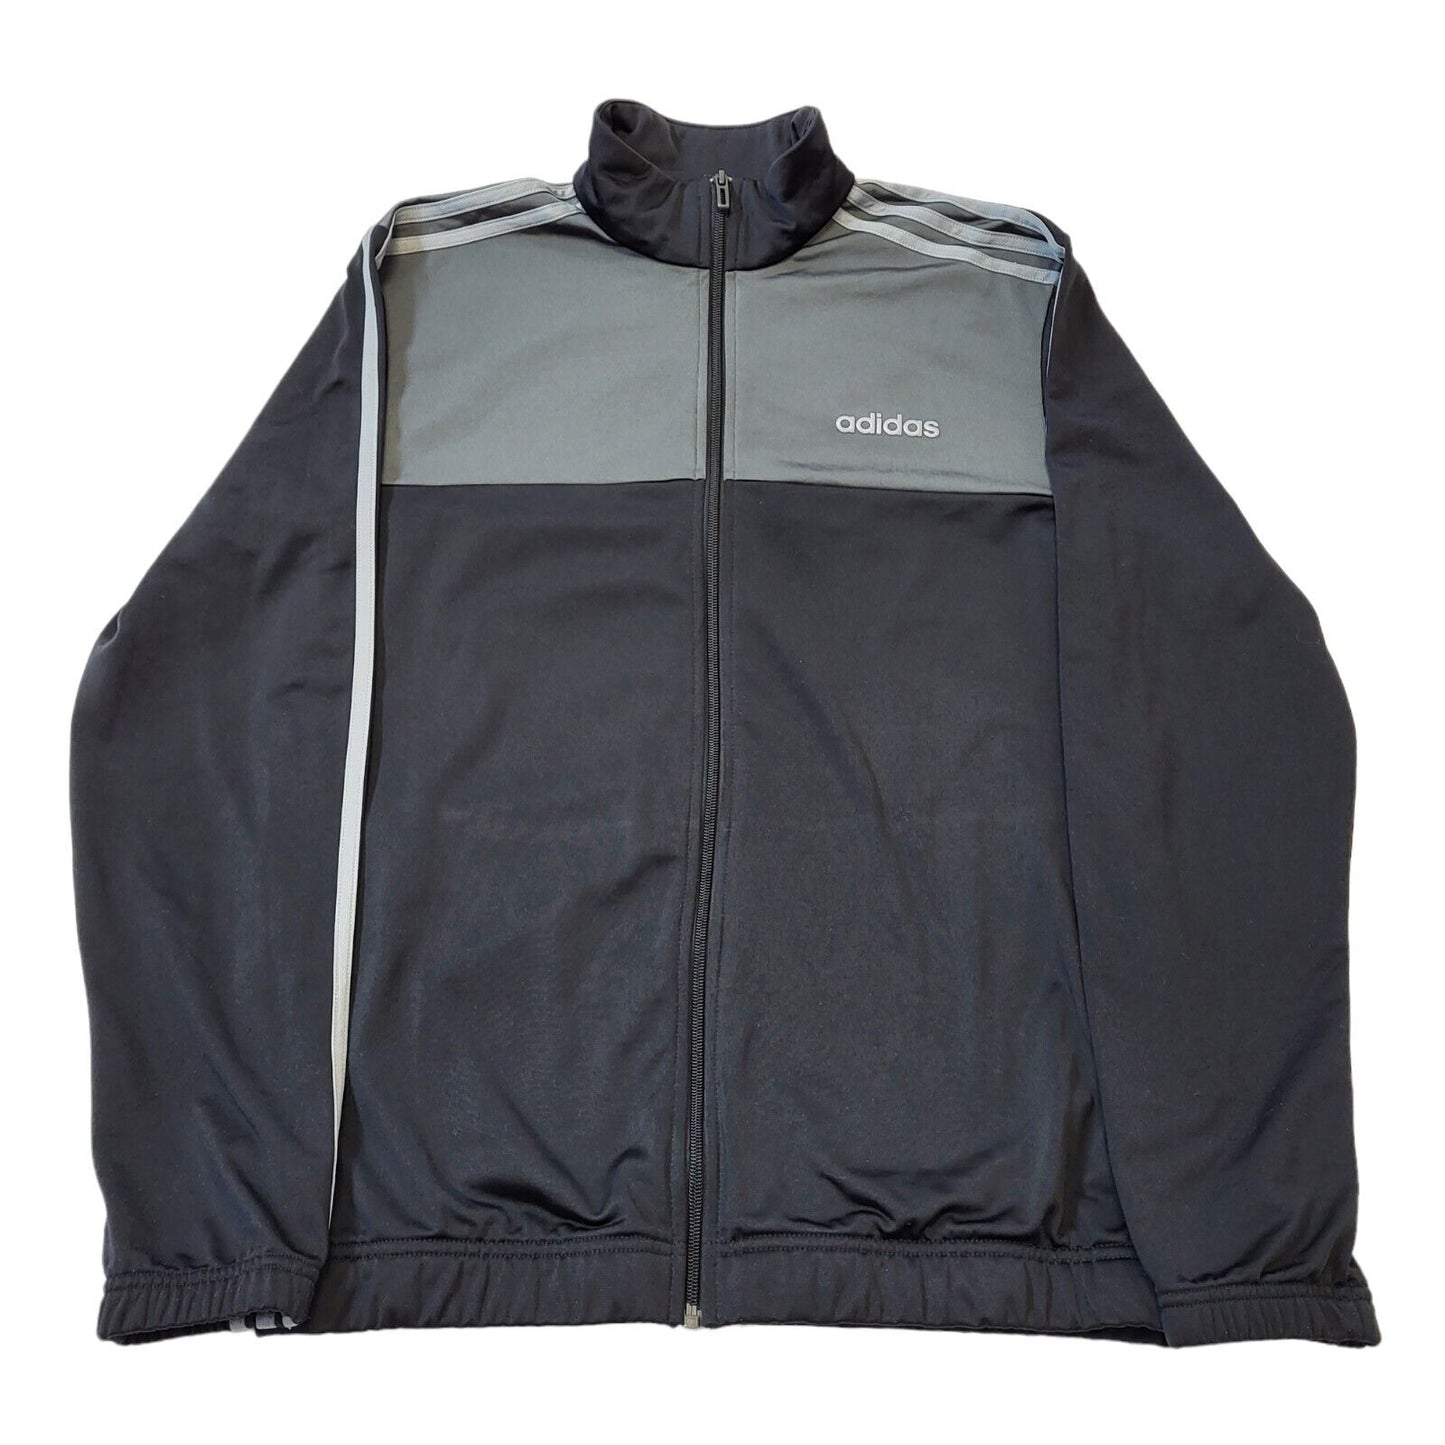 Adidas Jacket (M)